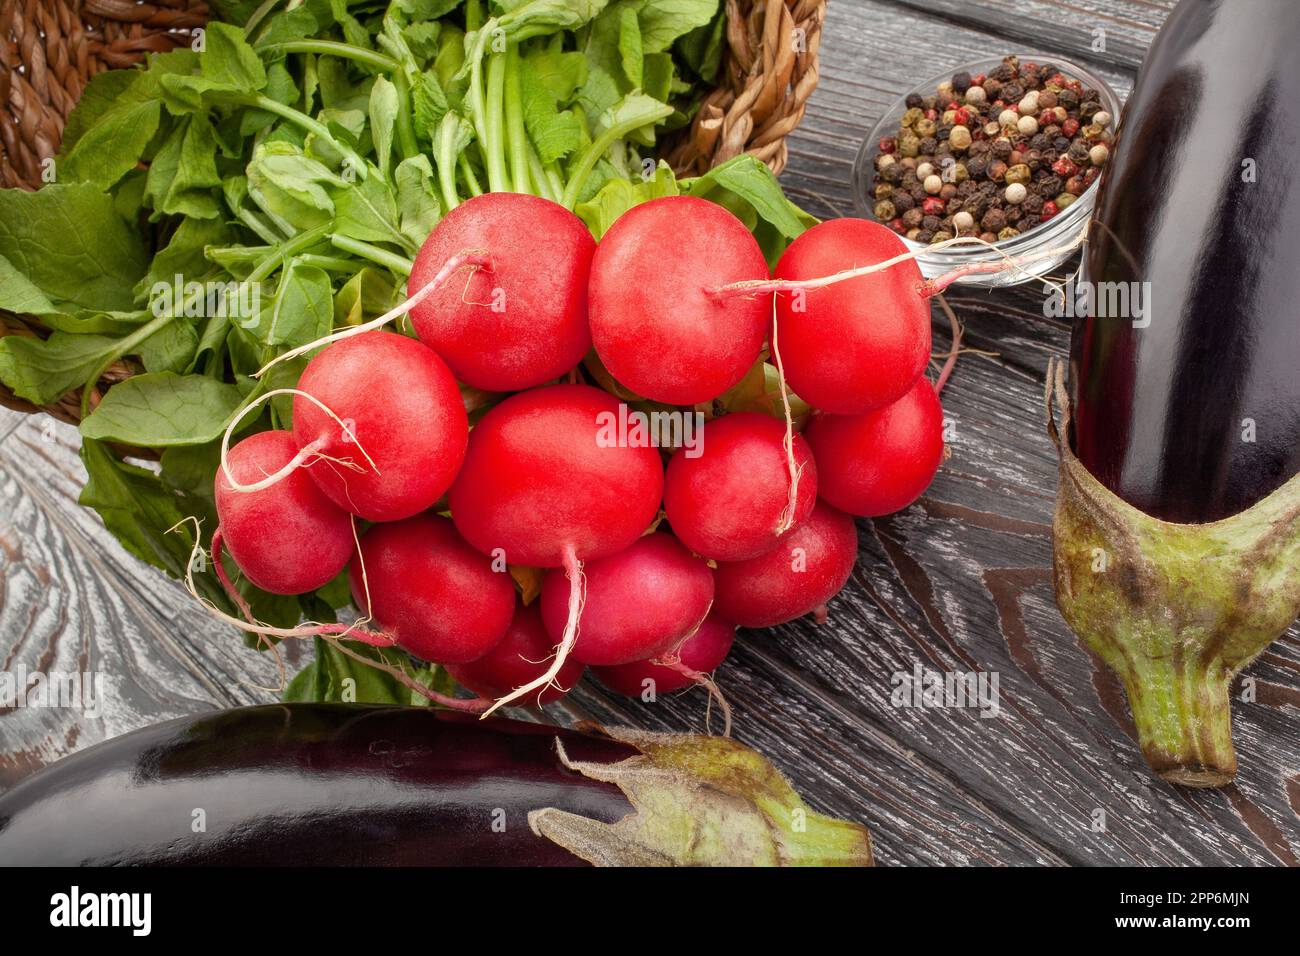 radish bunch on wood background Stock Photo